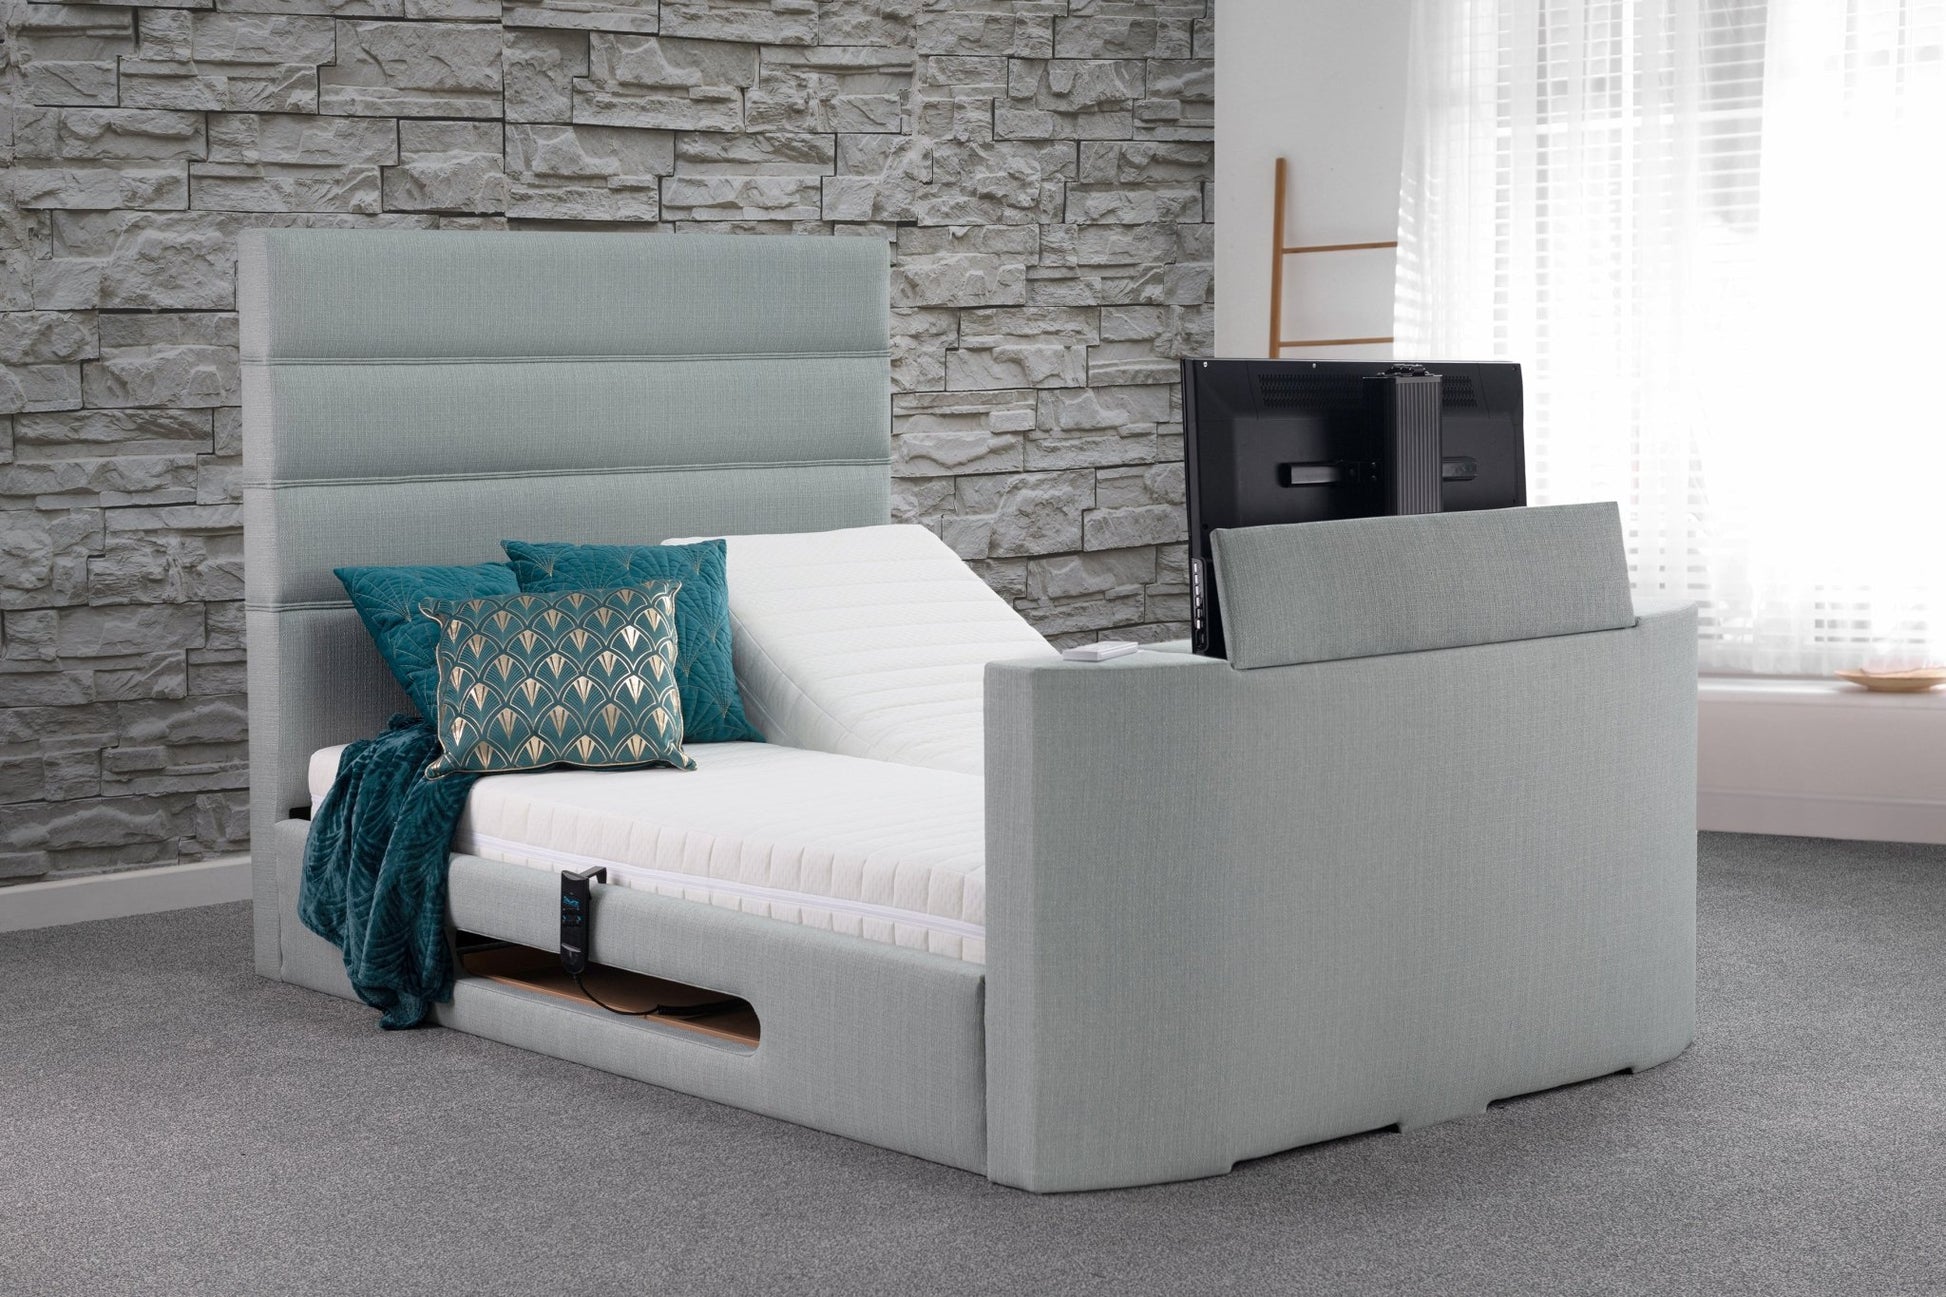 Mazarine Adjustable TV Bed - Sweet Dreams - TV Beds Northwest - Adjustable - adjustabletvbed